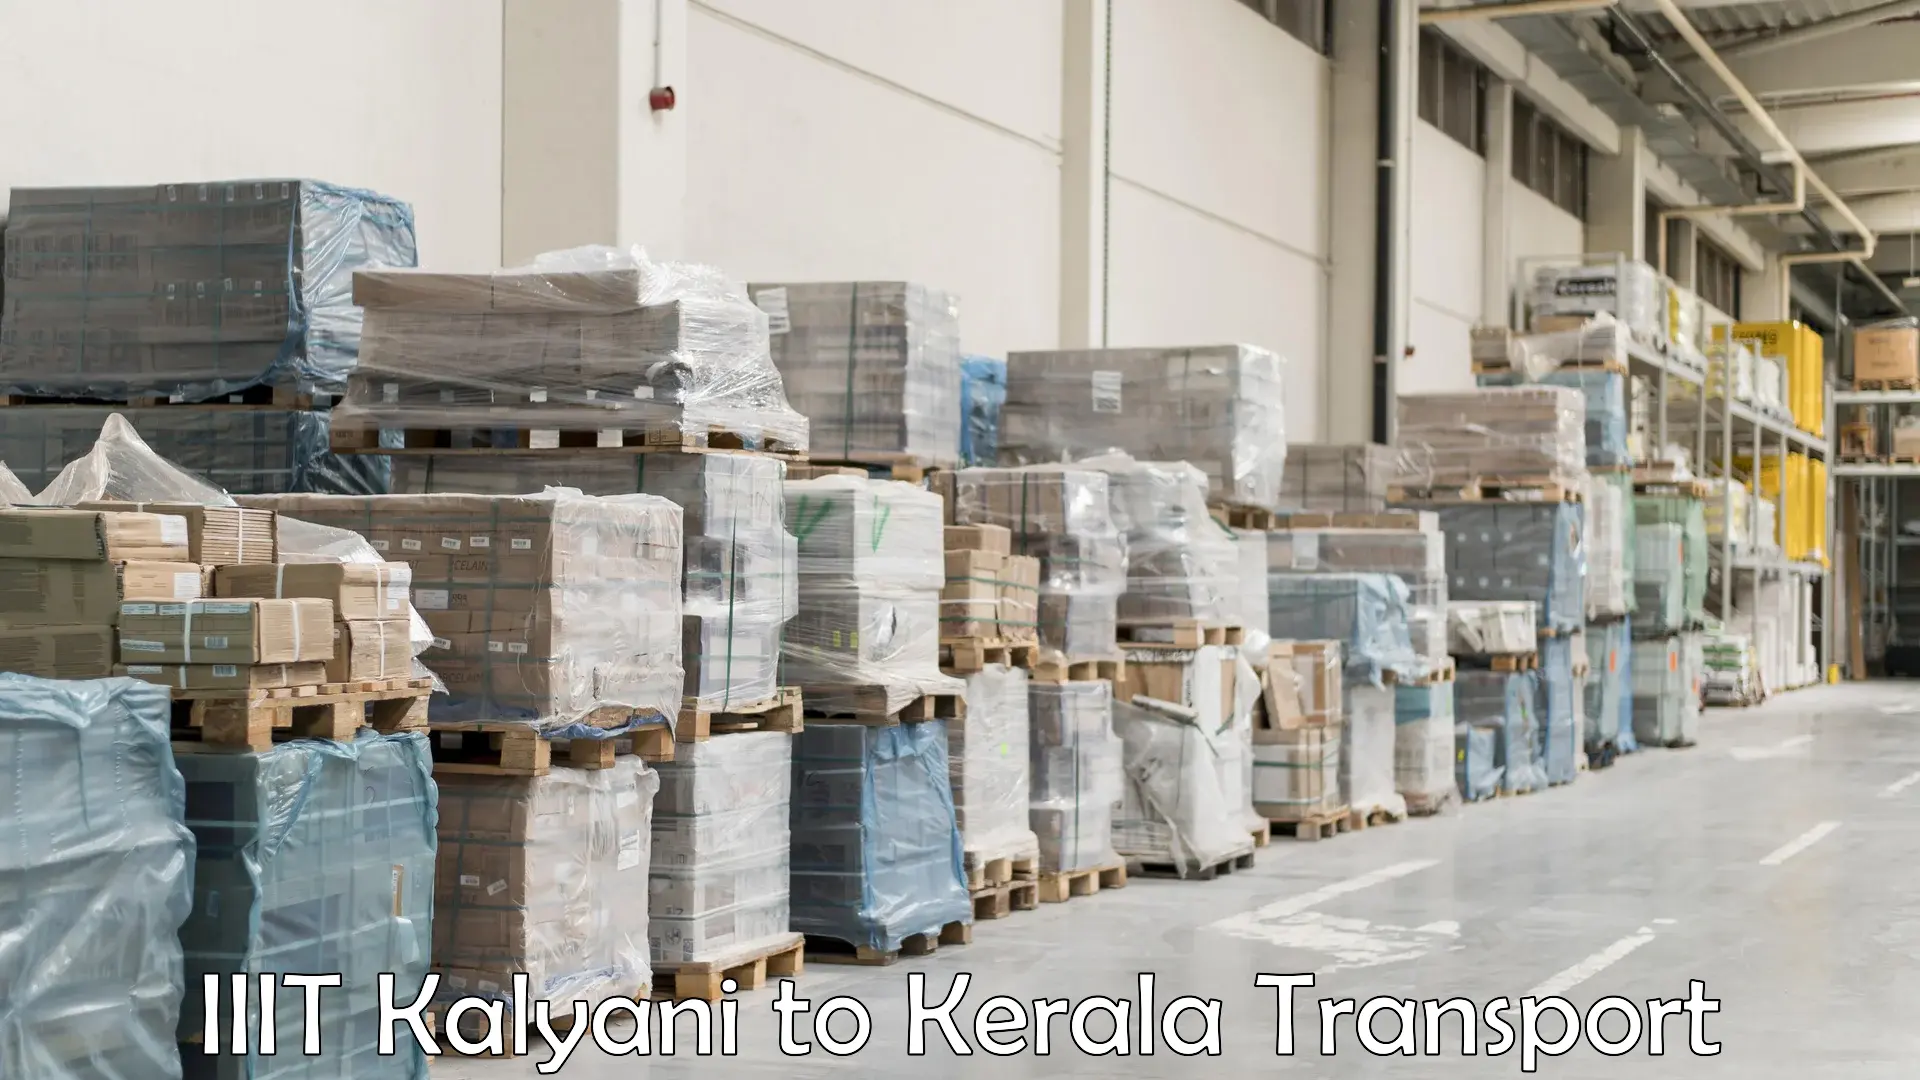 Land transport services IIIT Kalyani to Manjeri Kla